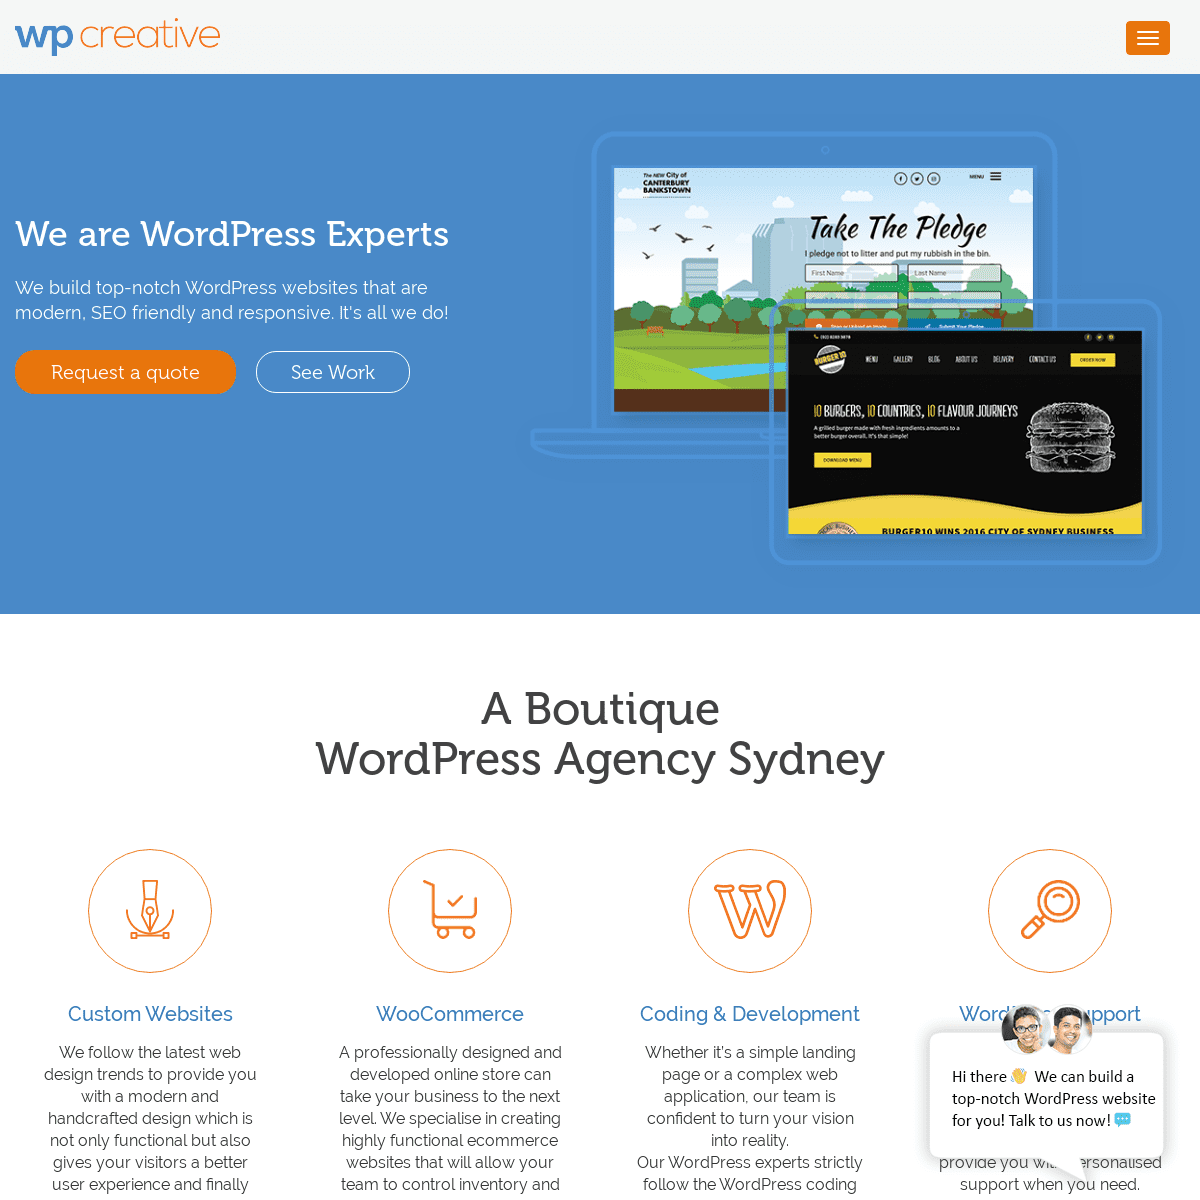 A complete backup of wpcreative.com.au